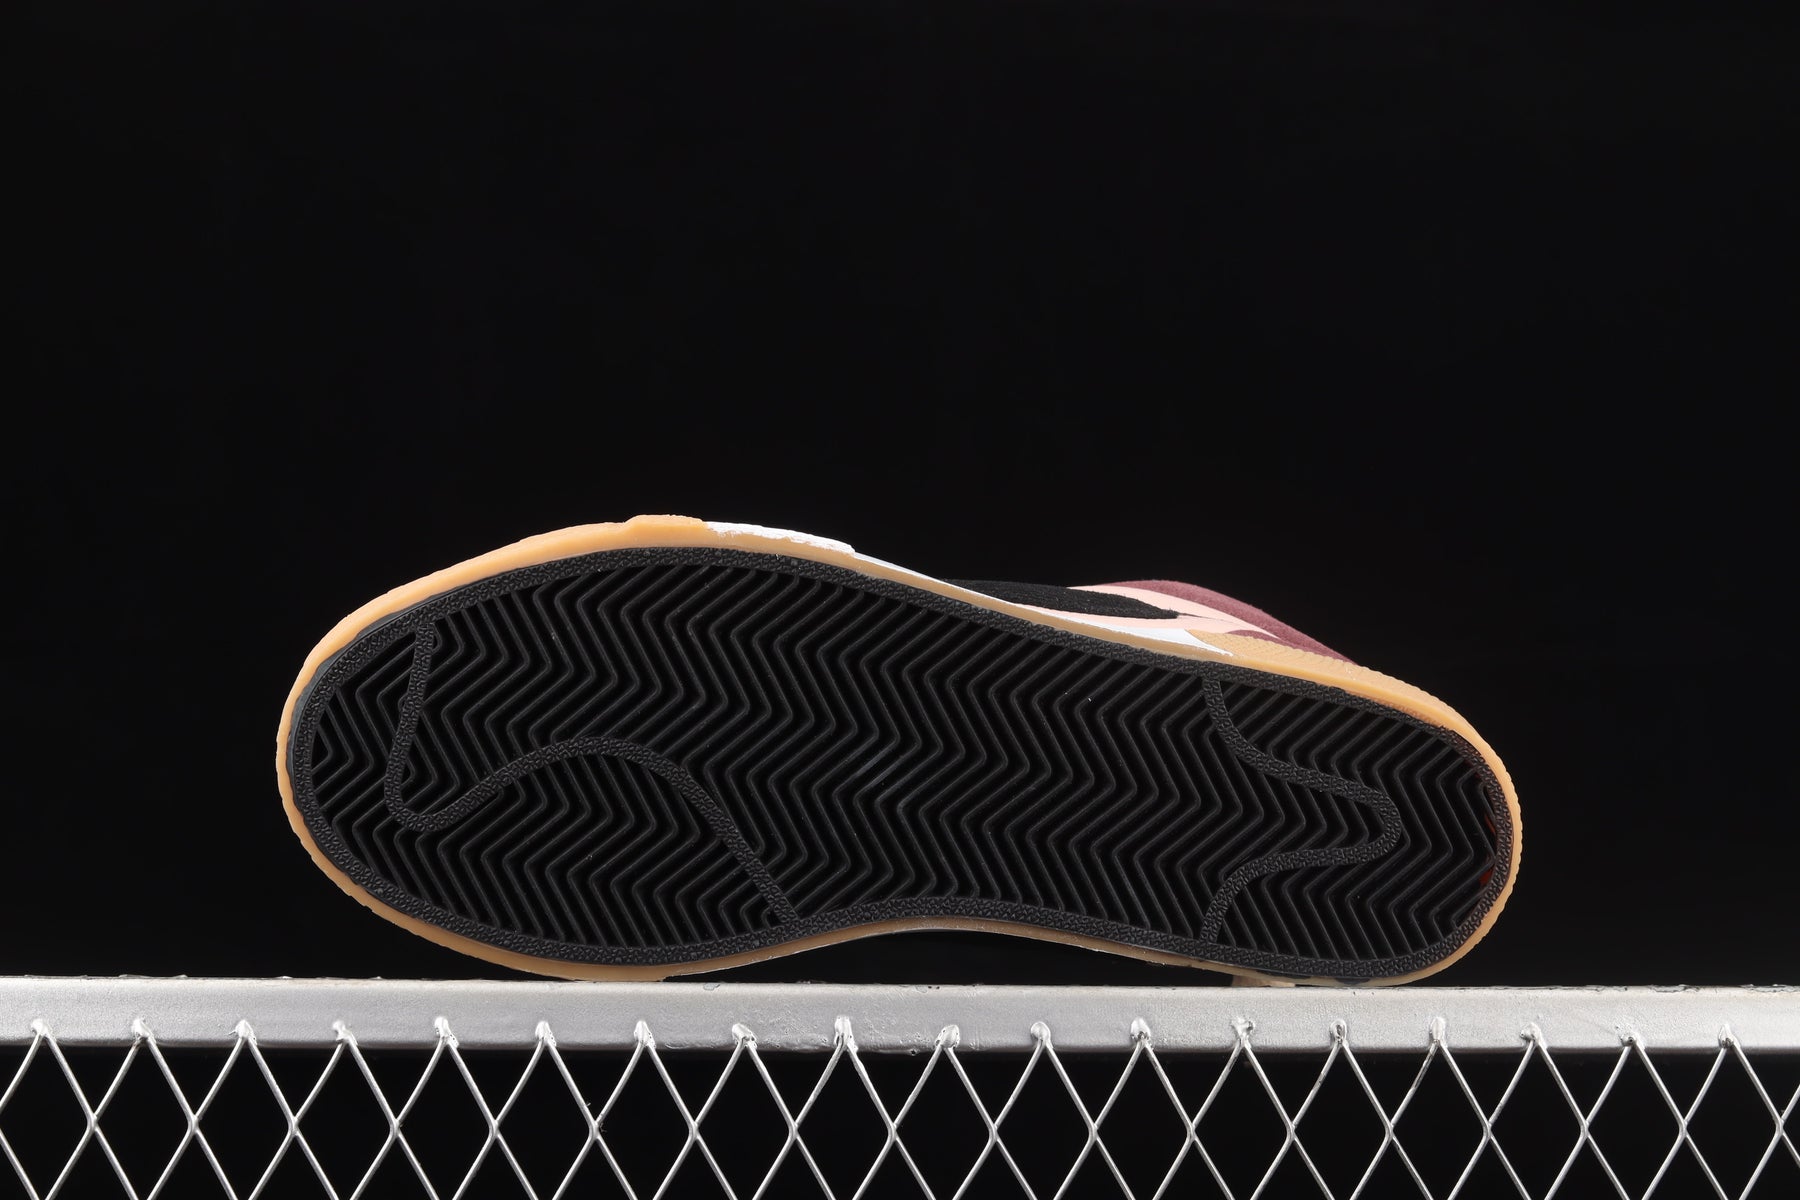 NikeMens Zoom Blazer Mid Premium SB - Mosaic Pack